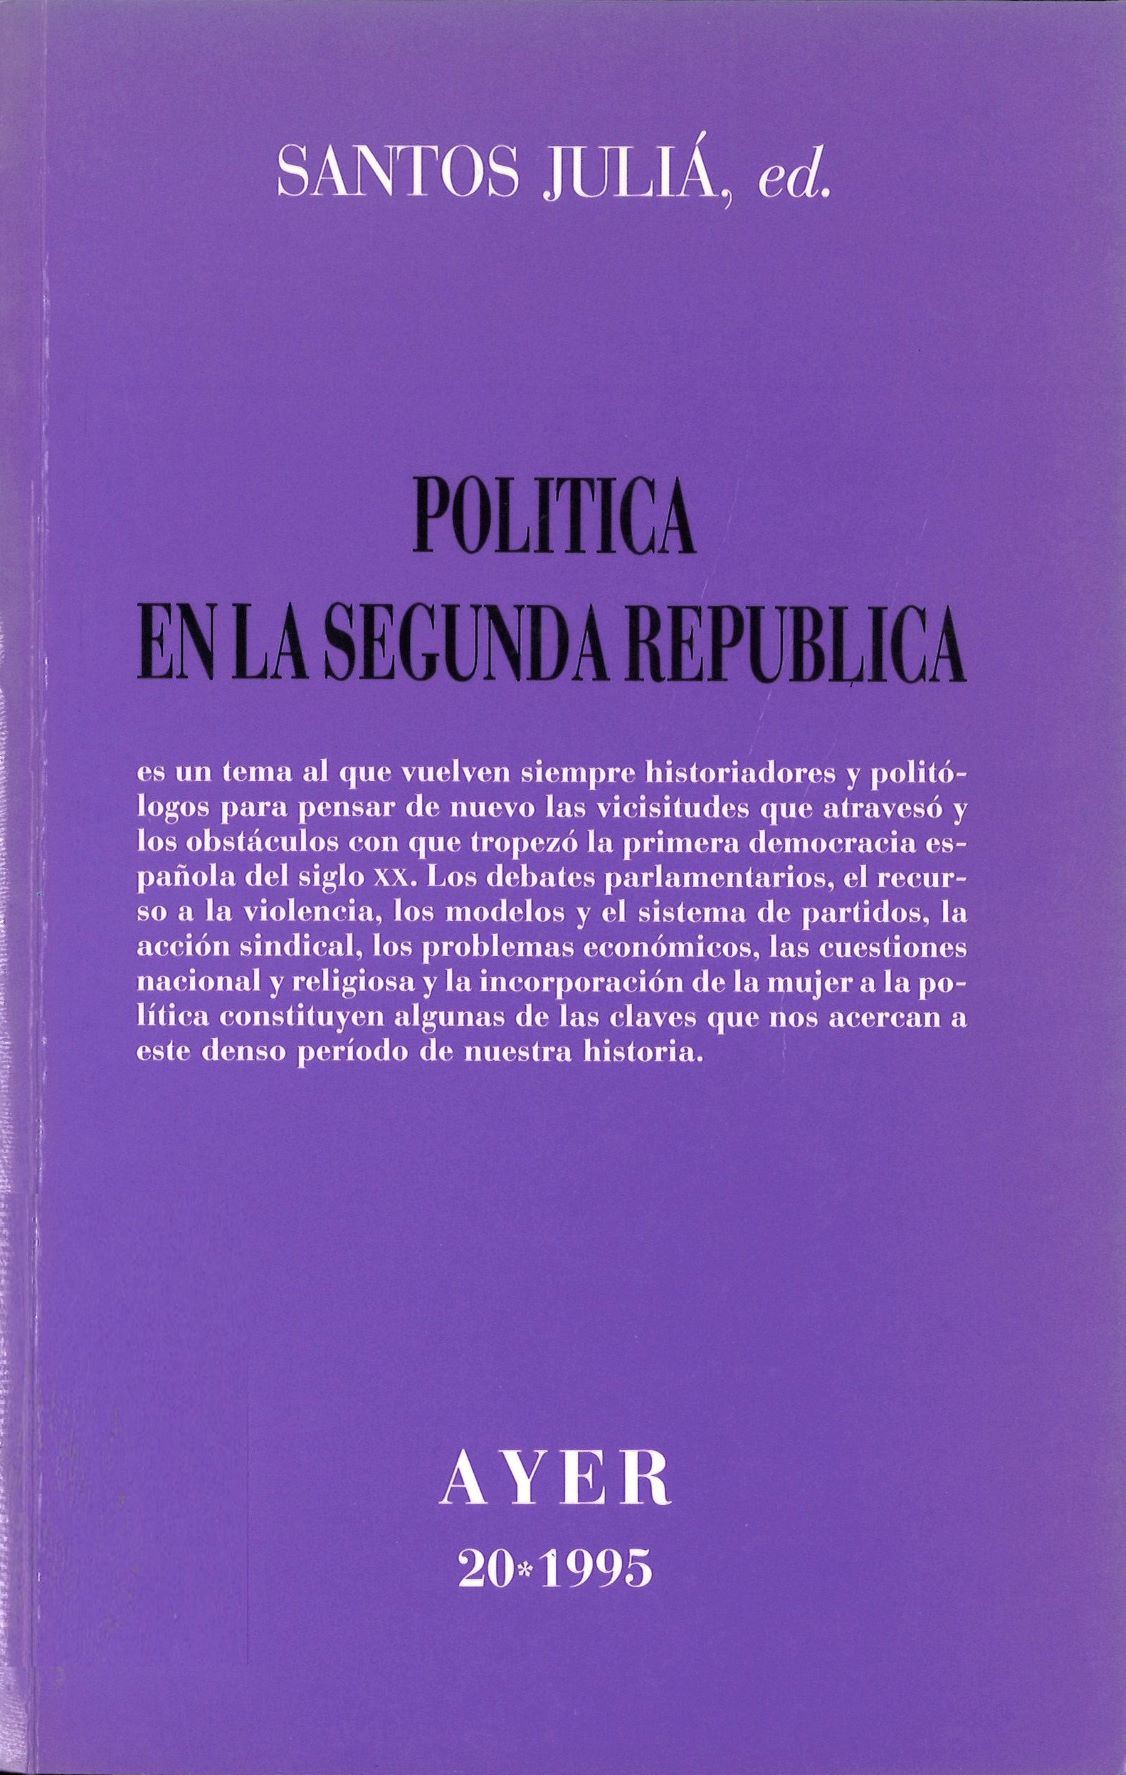 Imagen de portada del libro Política en la Segunda República